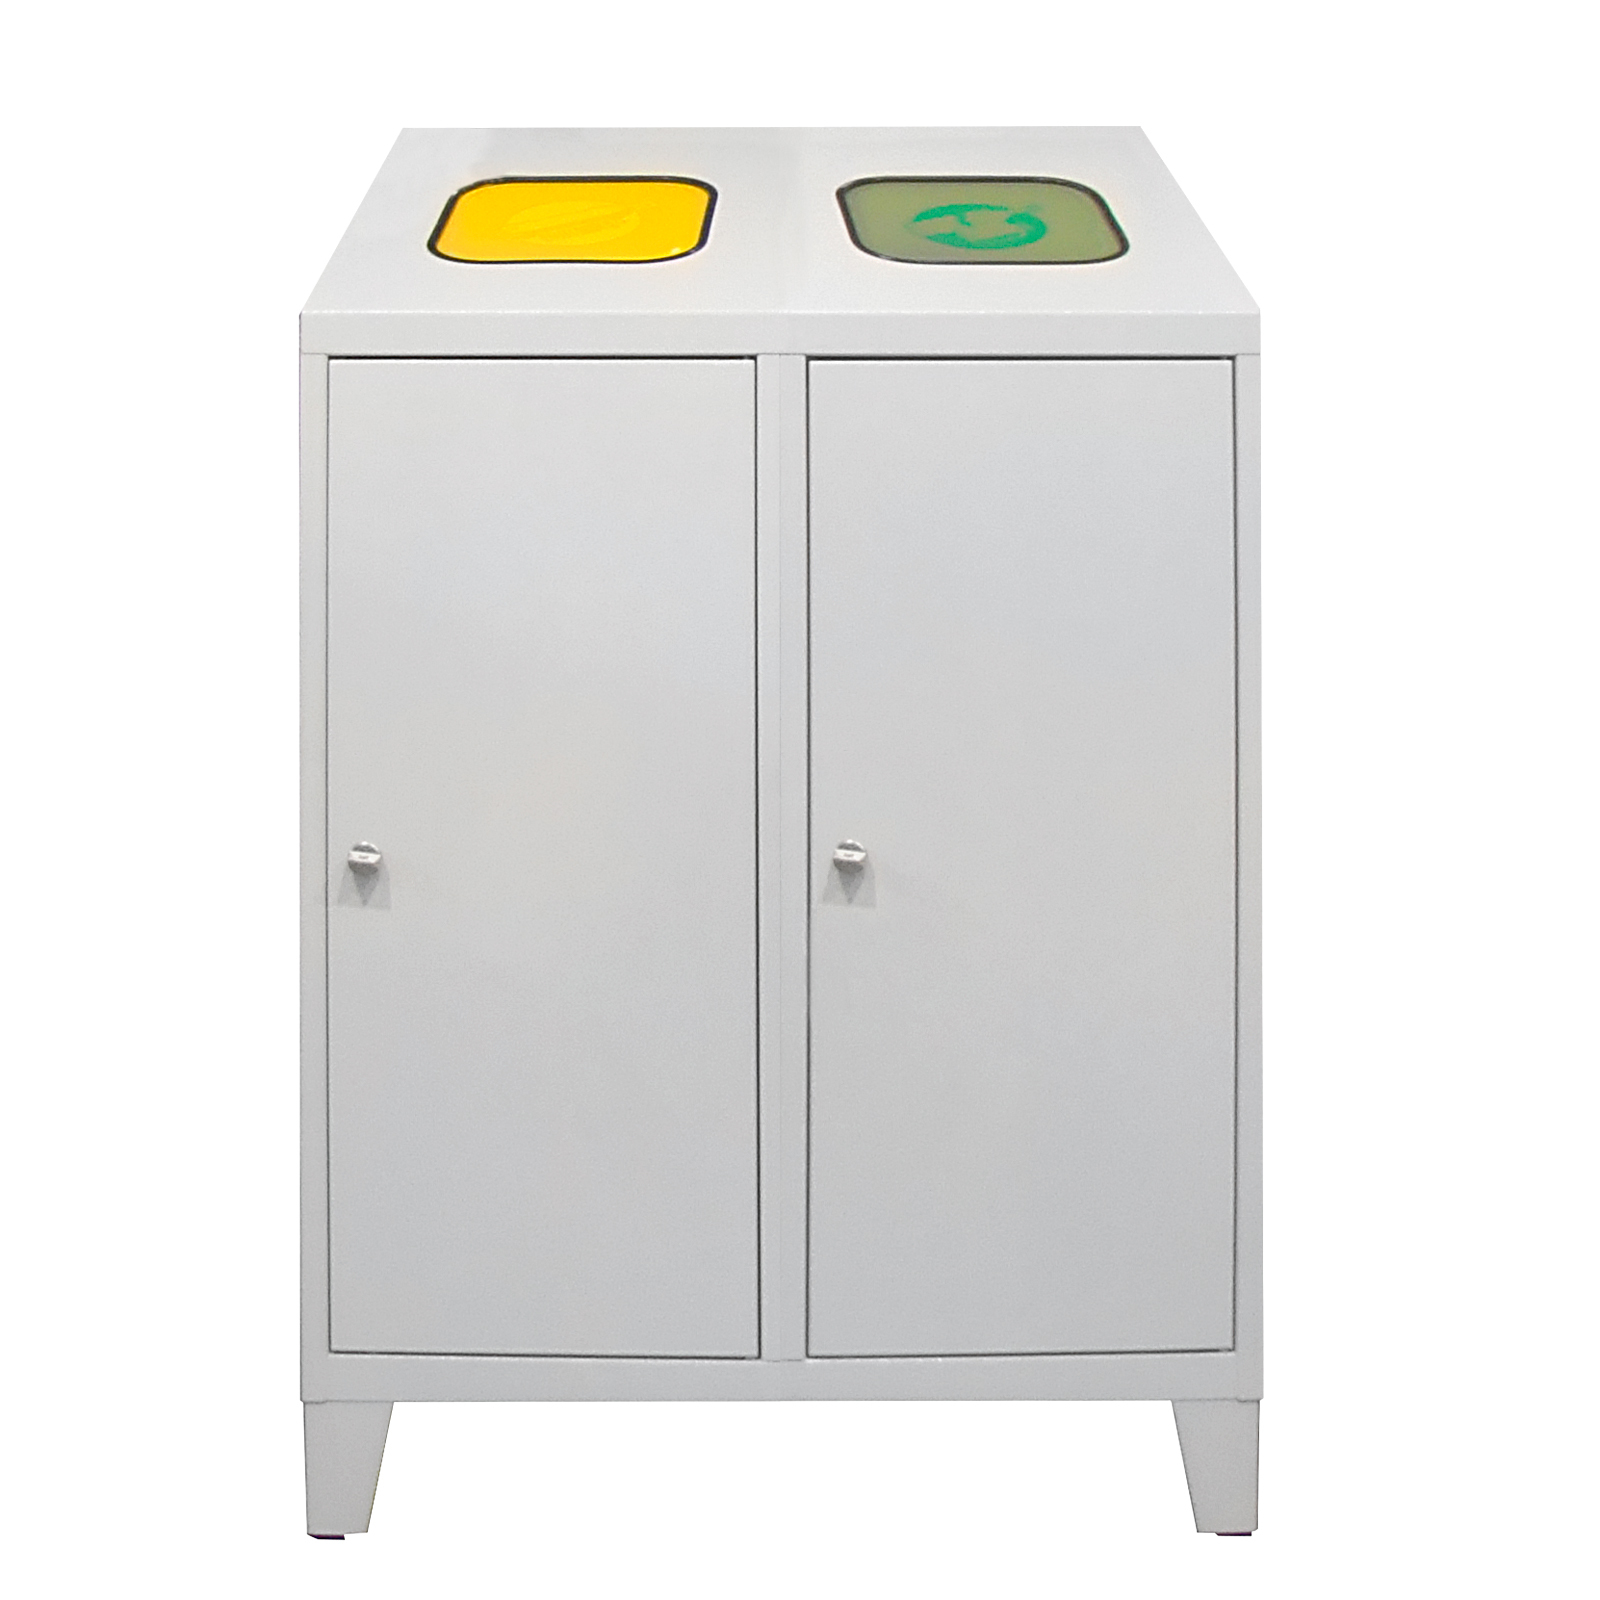 Recycling-Abfallsammler mit Abfallsackhalterung Duo | HxBxT 122x80x45cm | 2x 120 Liter | Lichtgrau